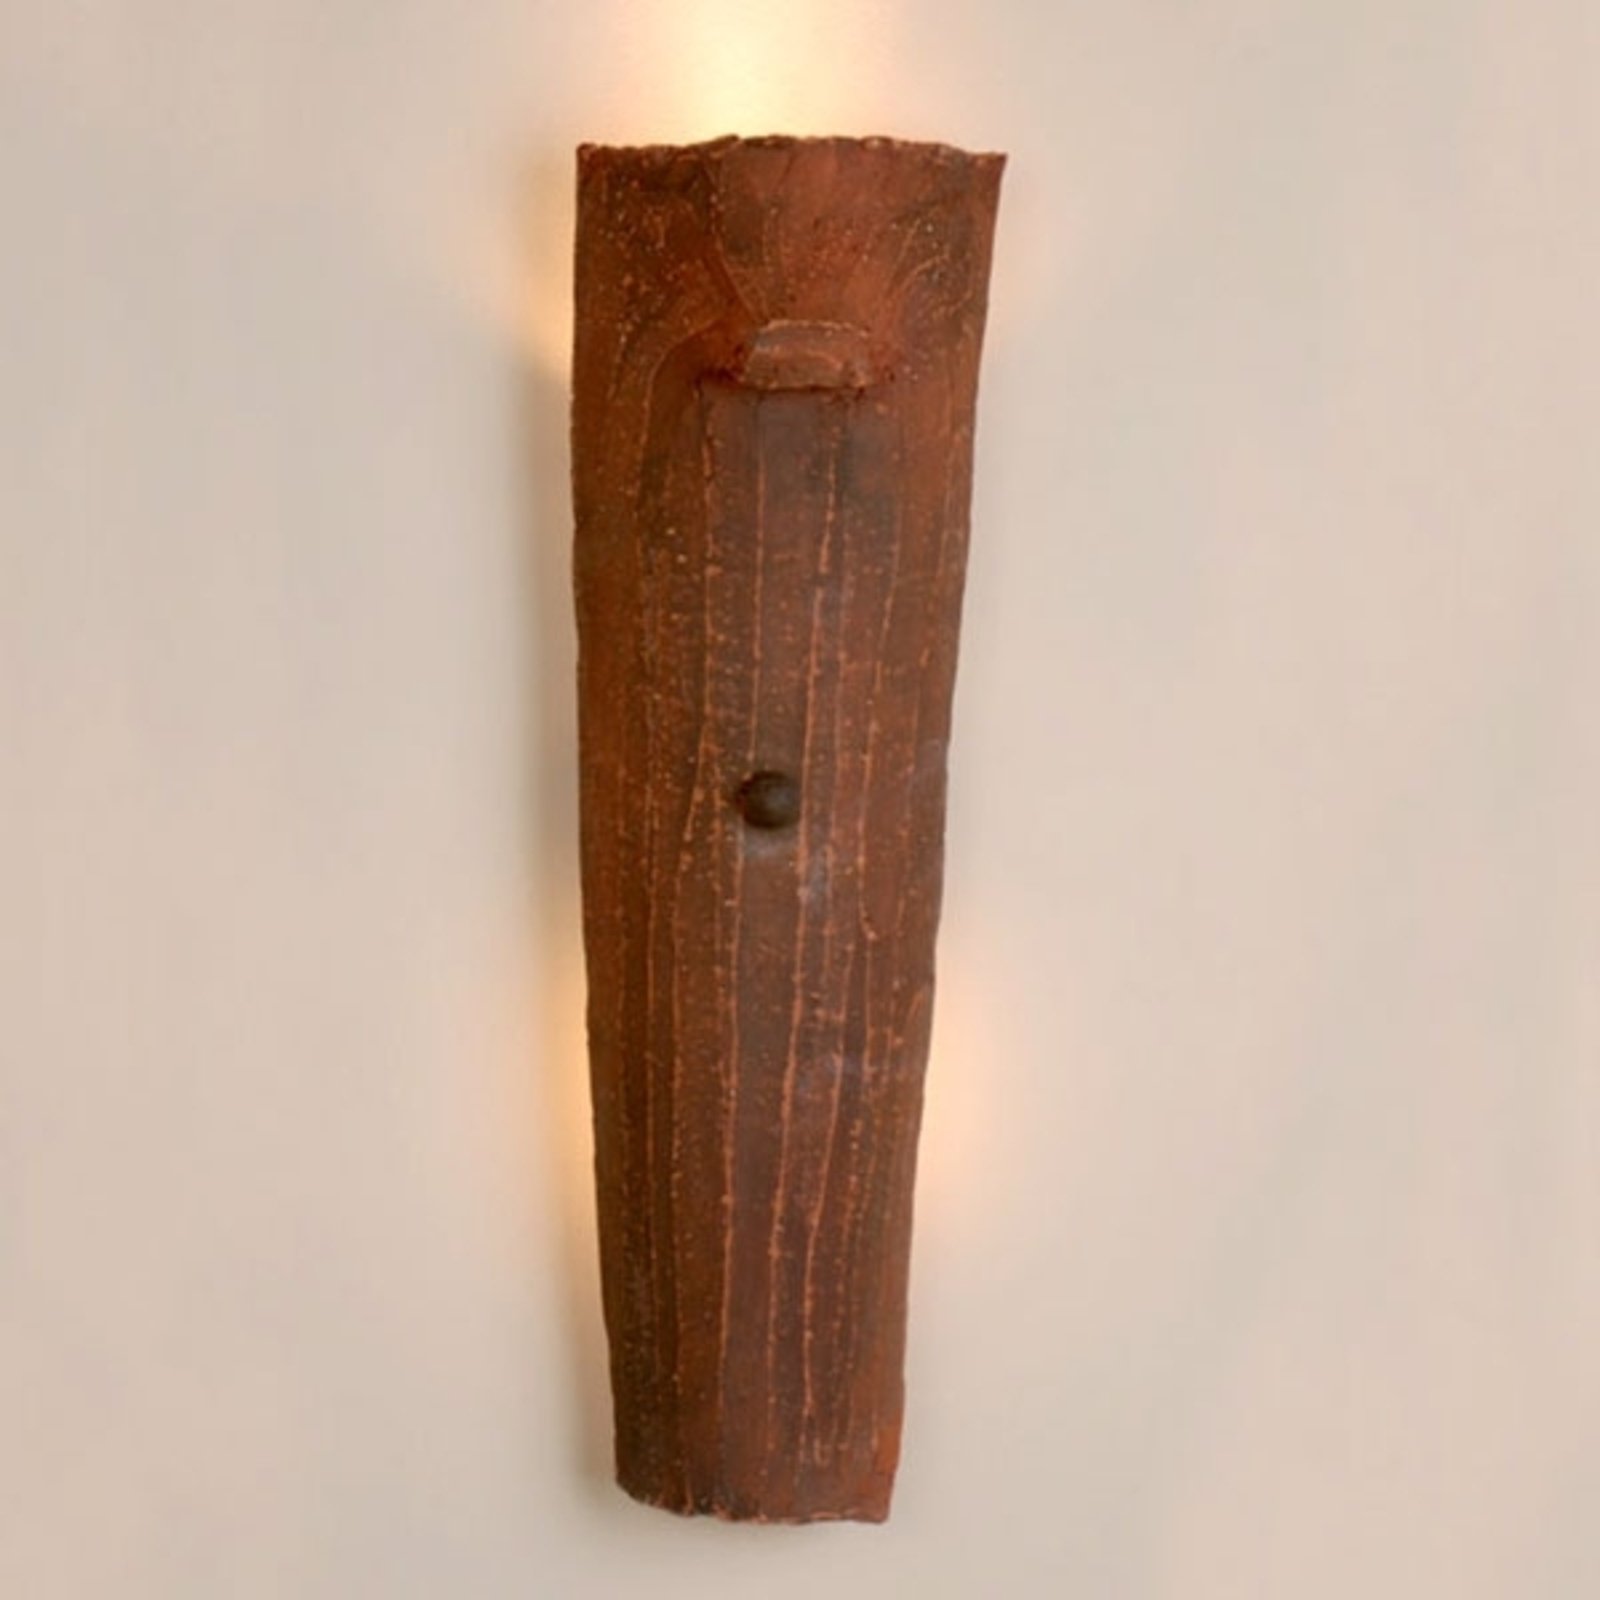 "Menzel Country" sieninis šviestuvas iš molio plytelių, netiesioginė šviesa